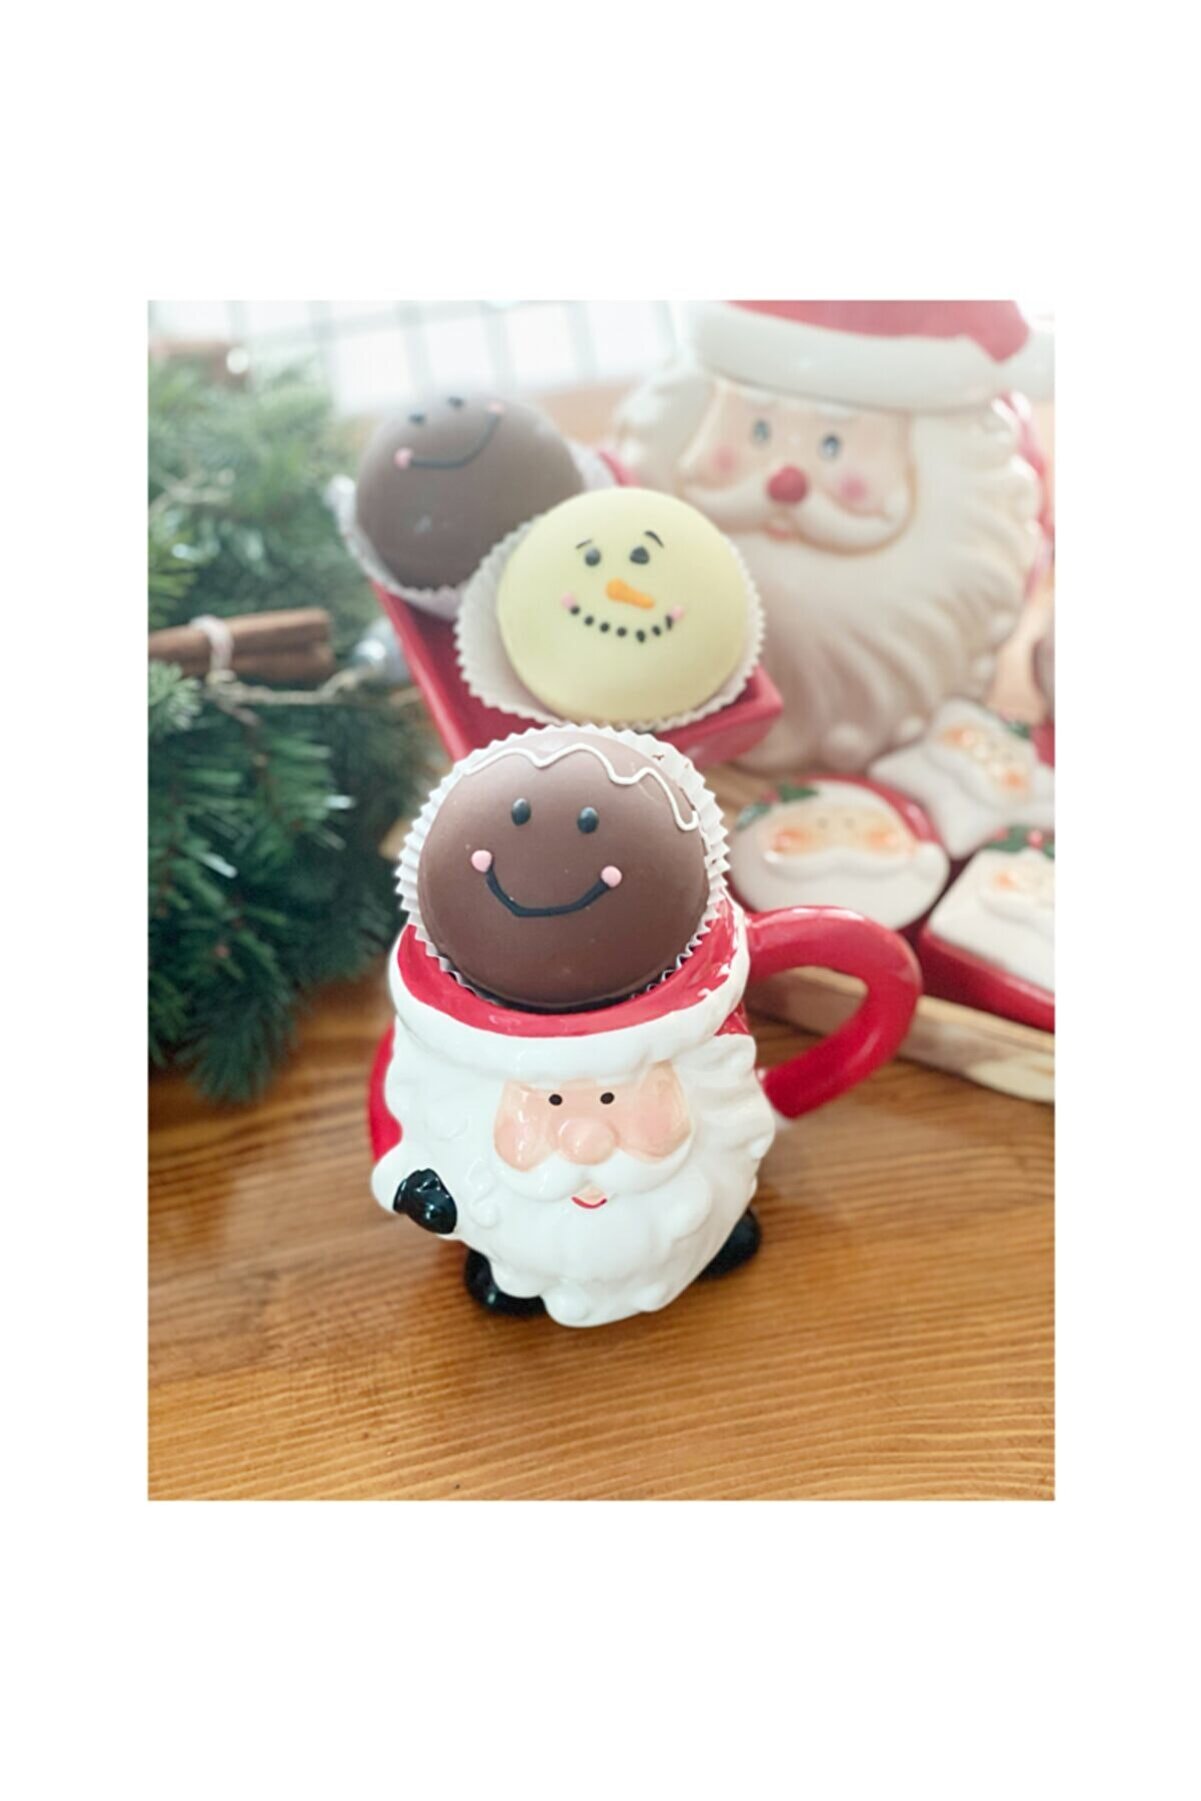 cookiesmir Gingerbread Sıcak Çikolata Bombası (gingerbread Hot Chocolate Bomb!)